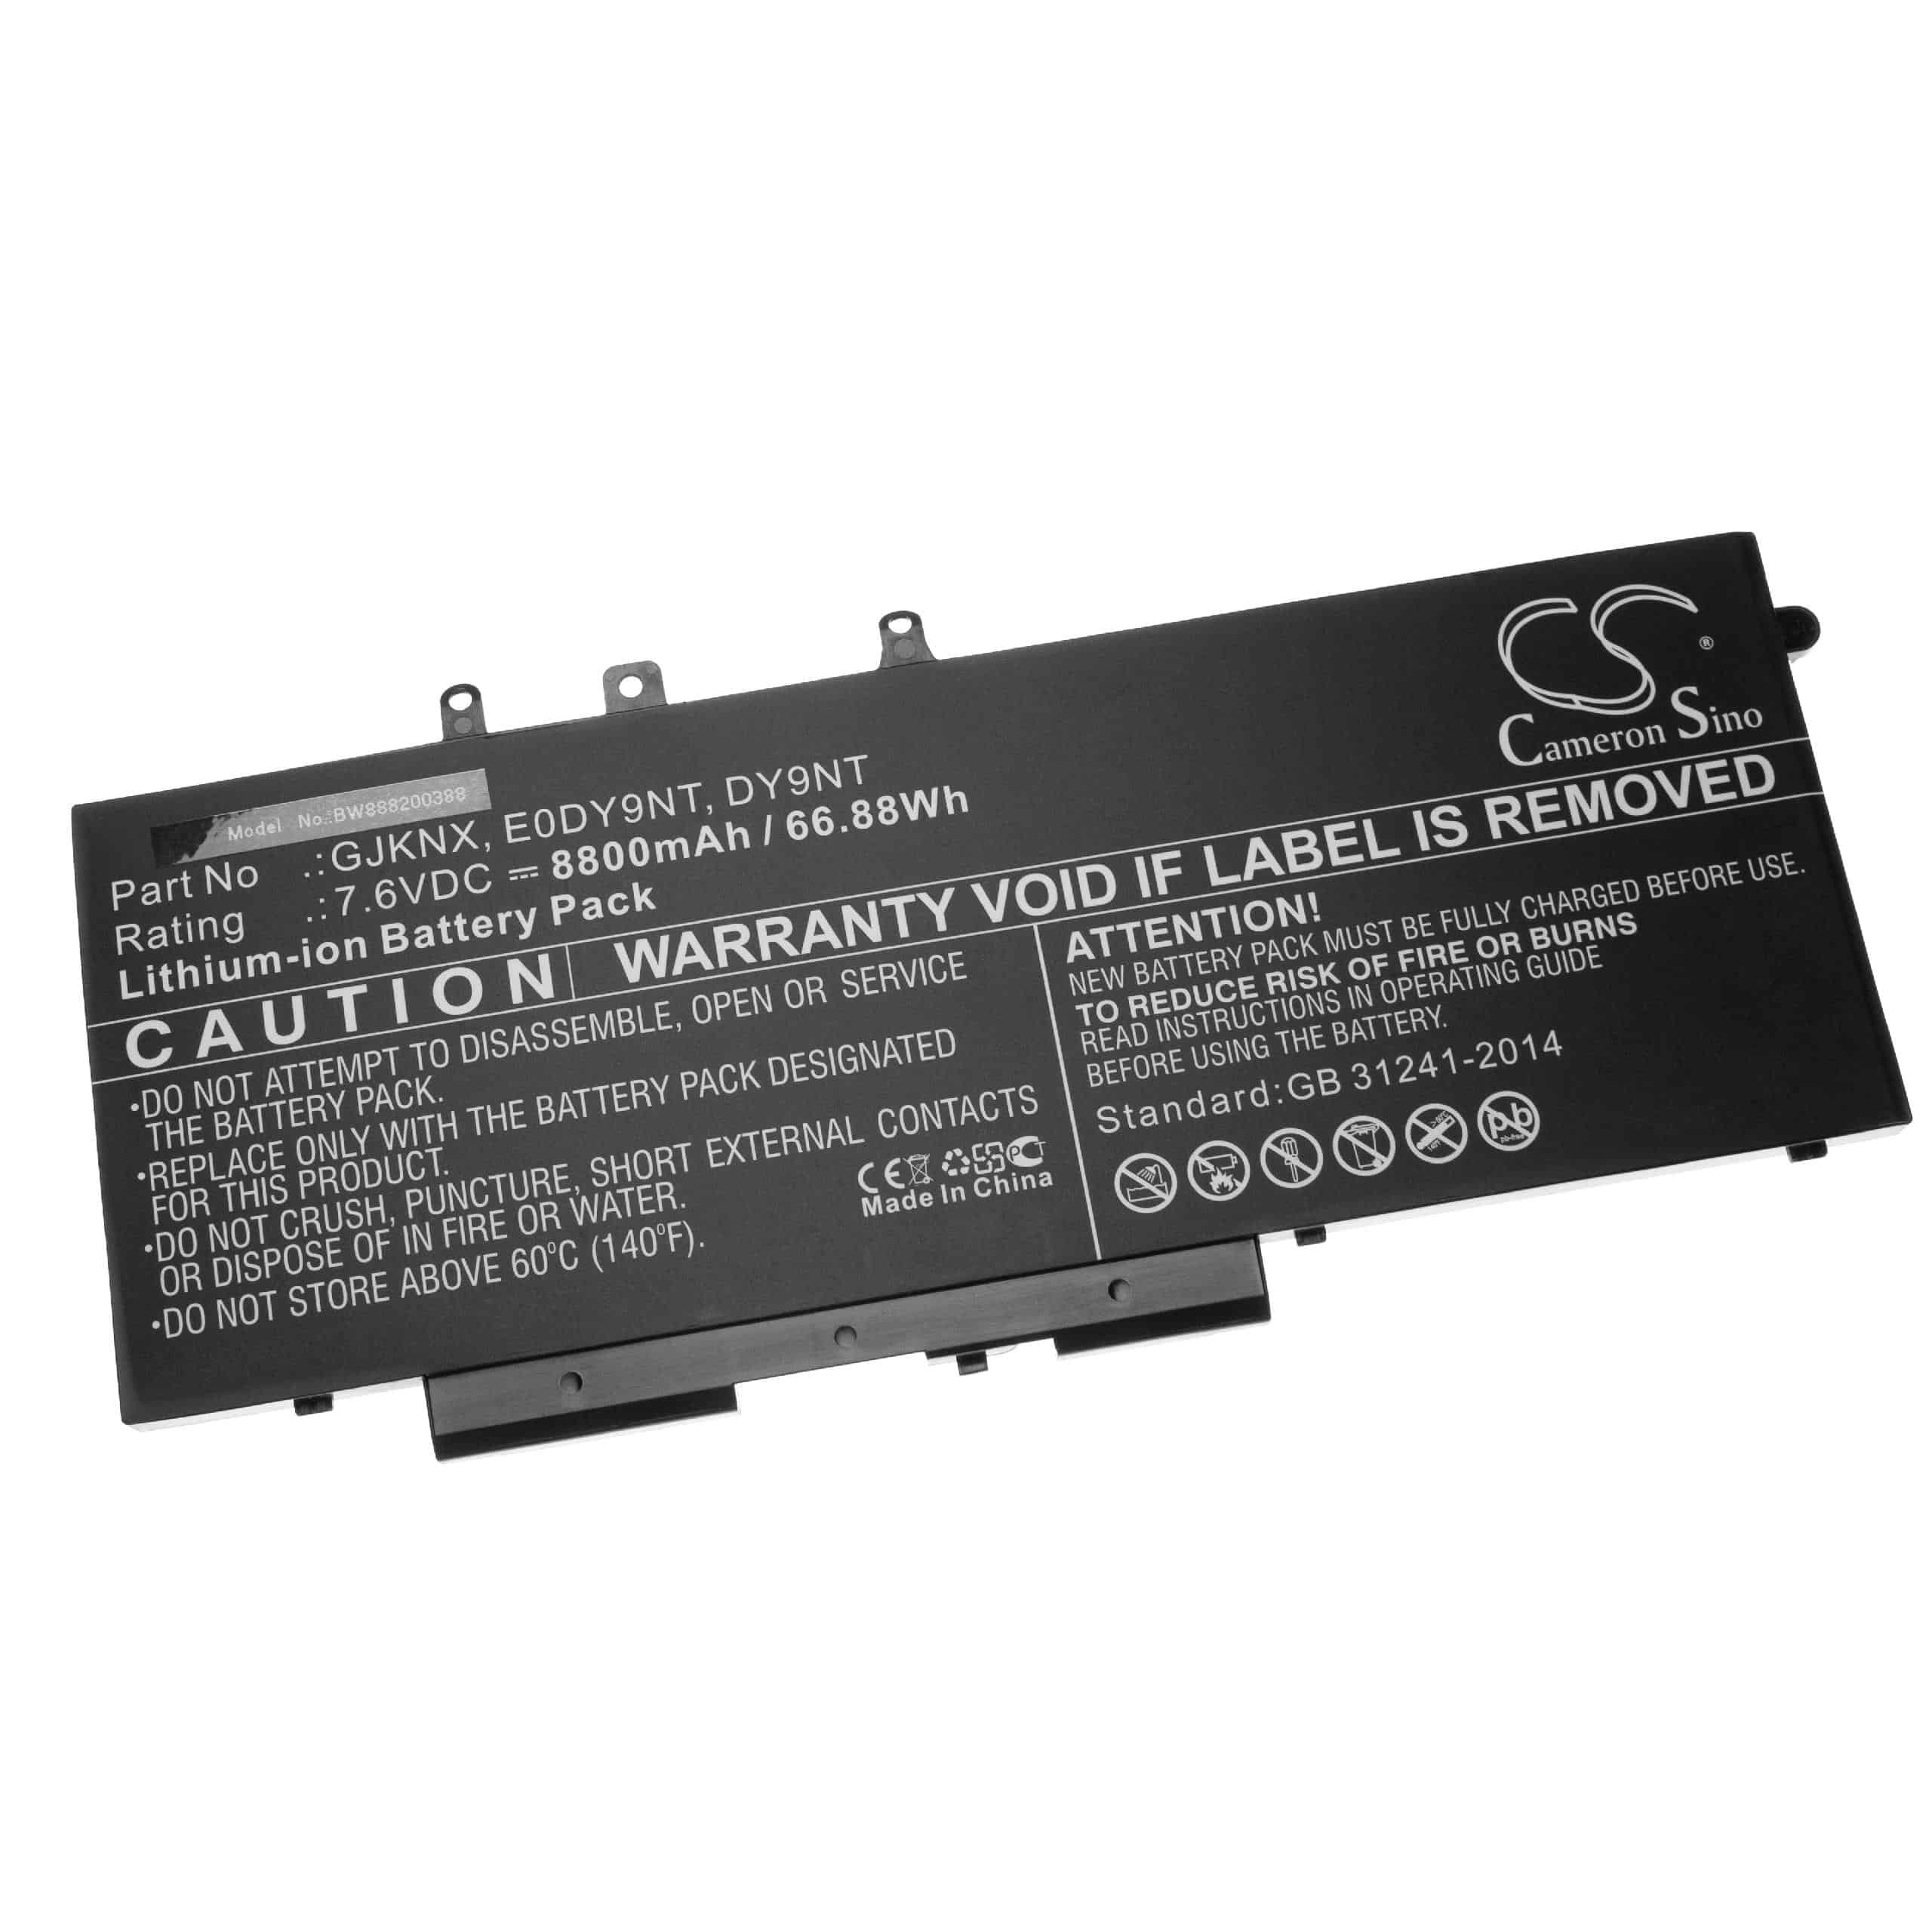 Akumulator do laptopa zamiennik Dell 451-BBZG, 0DY9NT, 3DDDG, 03VC9Y, 00JWGP - 8800 mAh 7,6 V Li-Ion, czarny